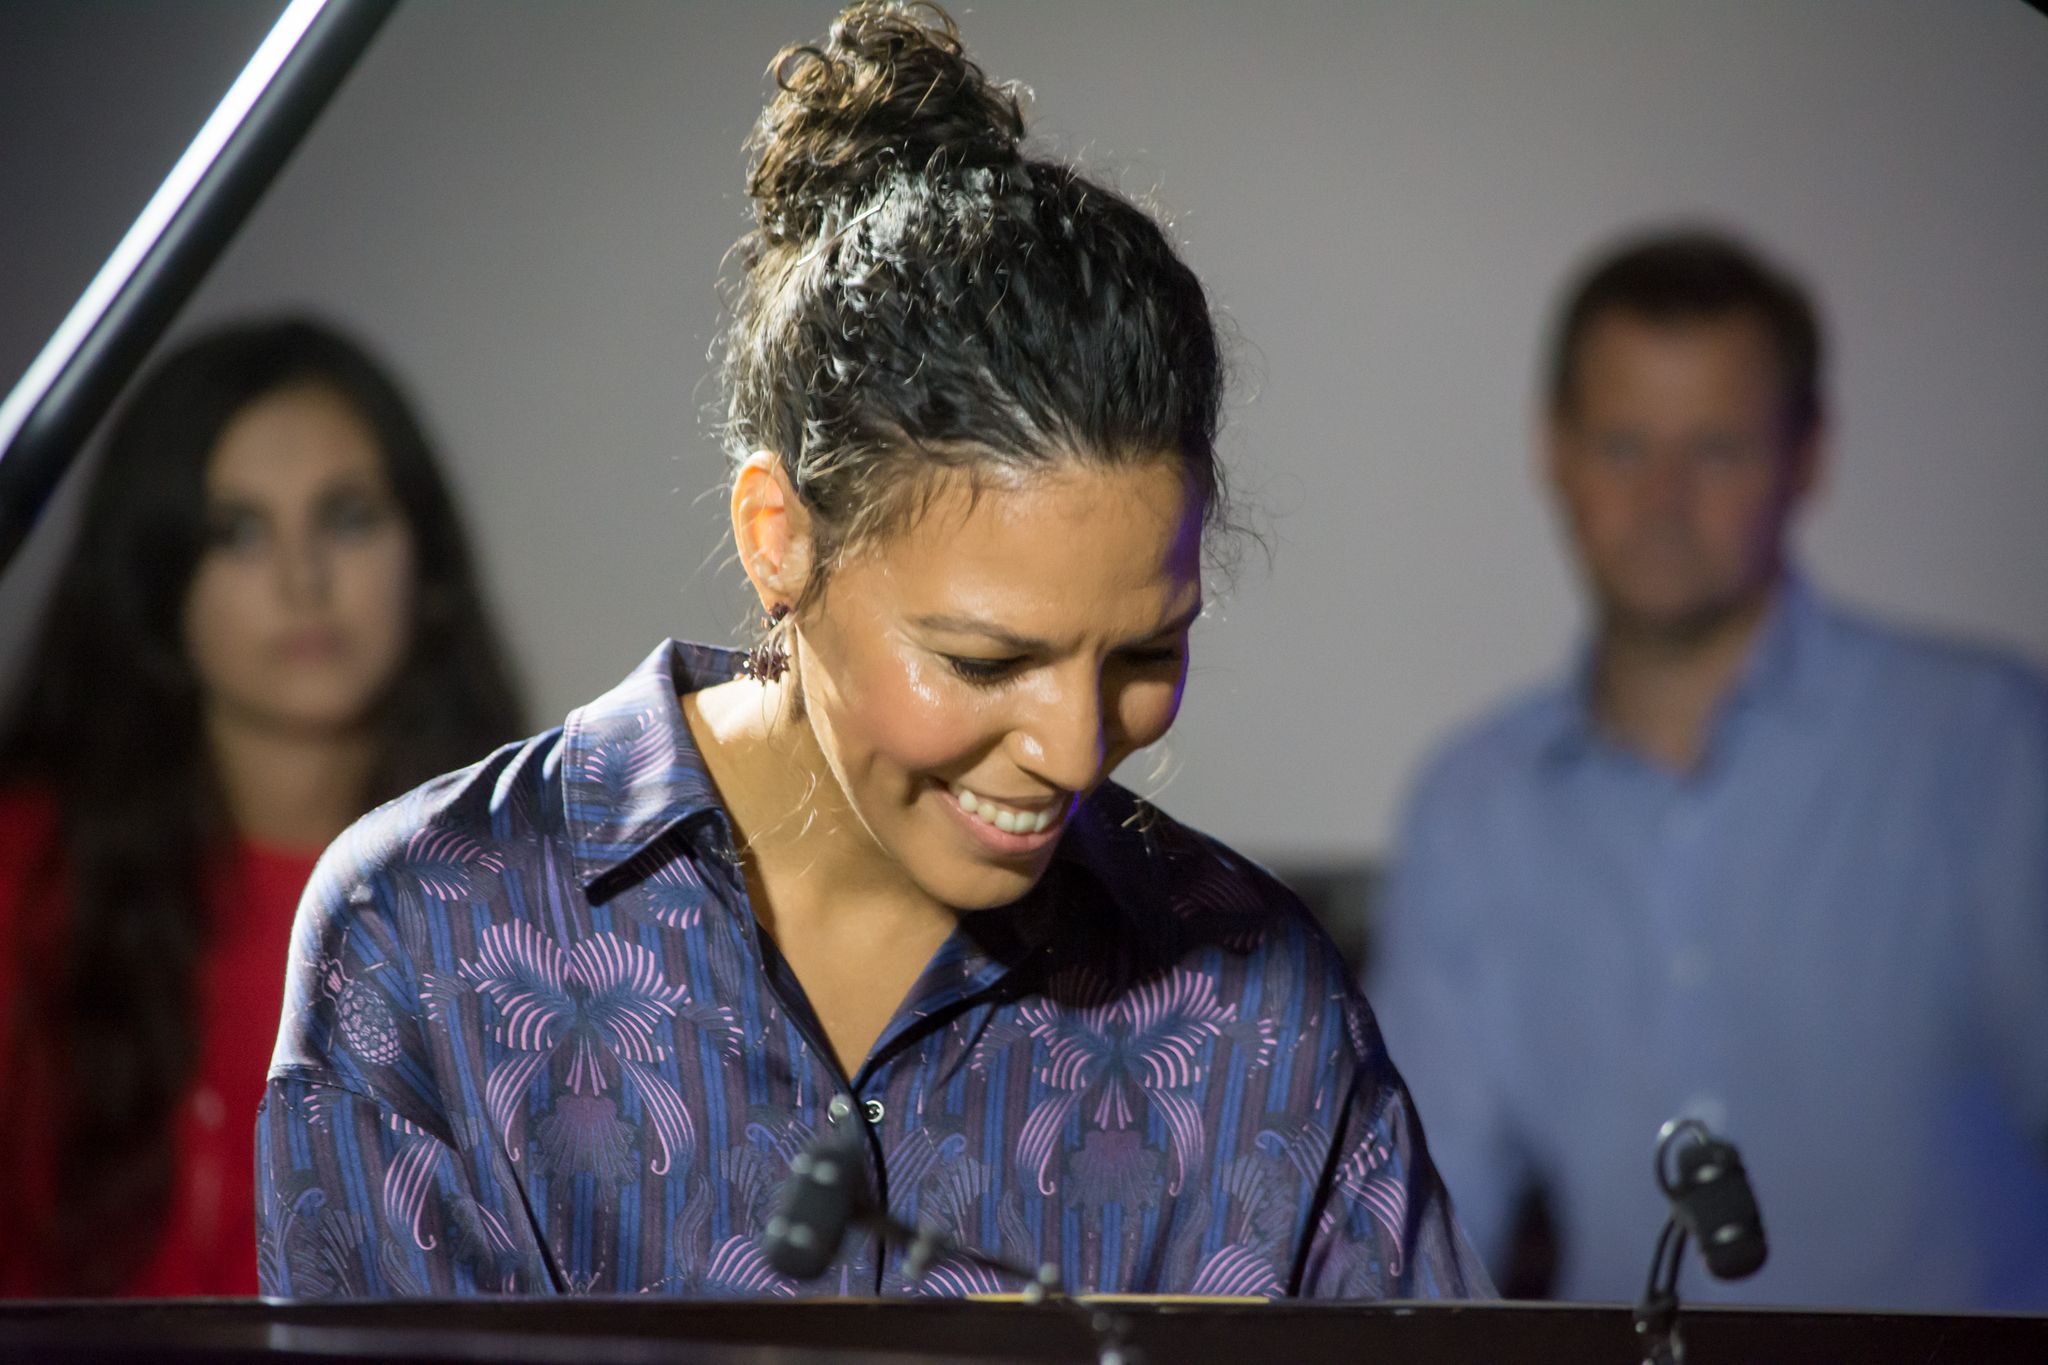 Marialy Pacheco - pierwsza kobieta - laureatka konkursu  Montreux Jazz Festiwal Solo Piano Competition, podczas koncertu w Chełmnie w  2019 r.